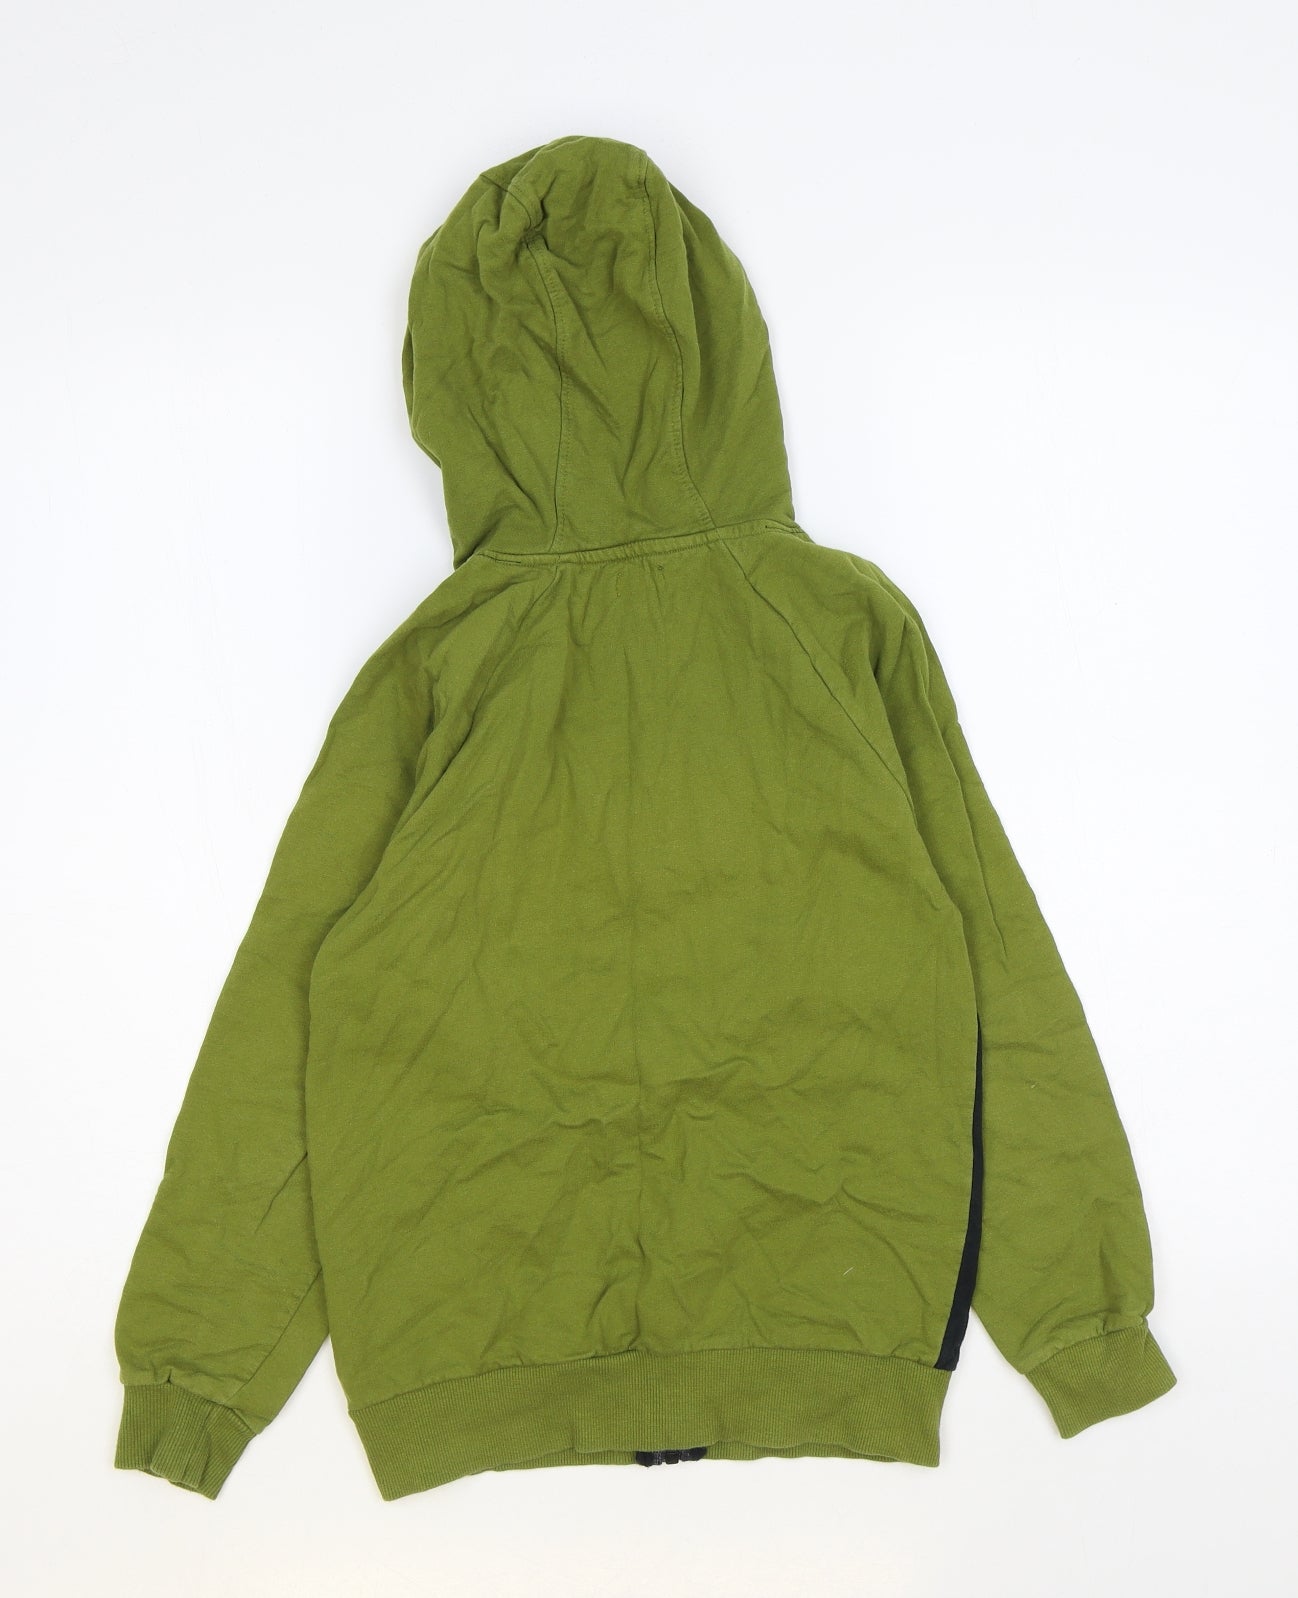 Studio Boys Green Cotton Full Zip Hoodie Size 10-11 Years Zip